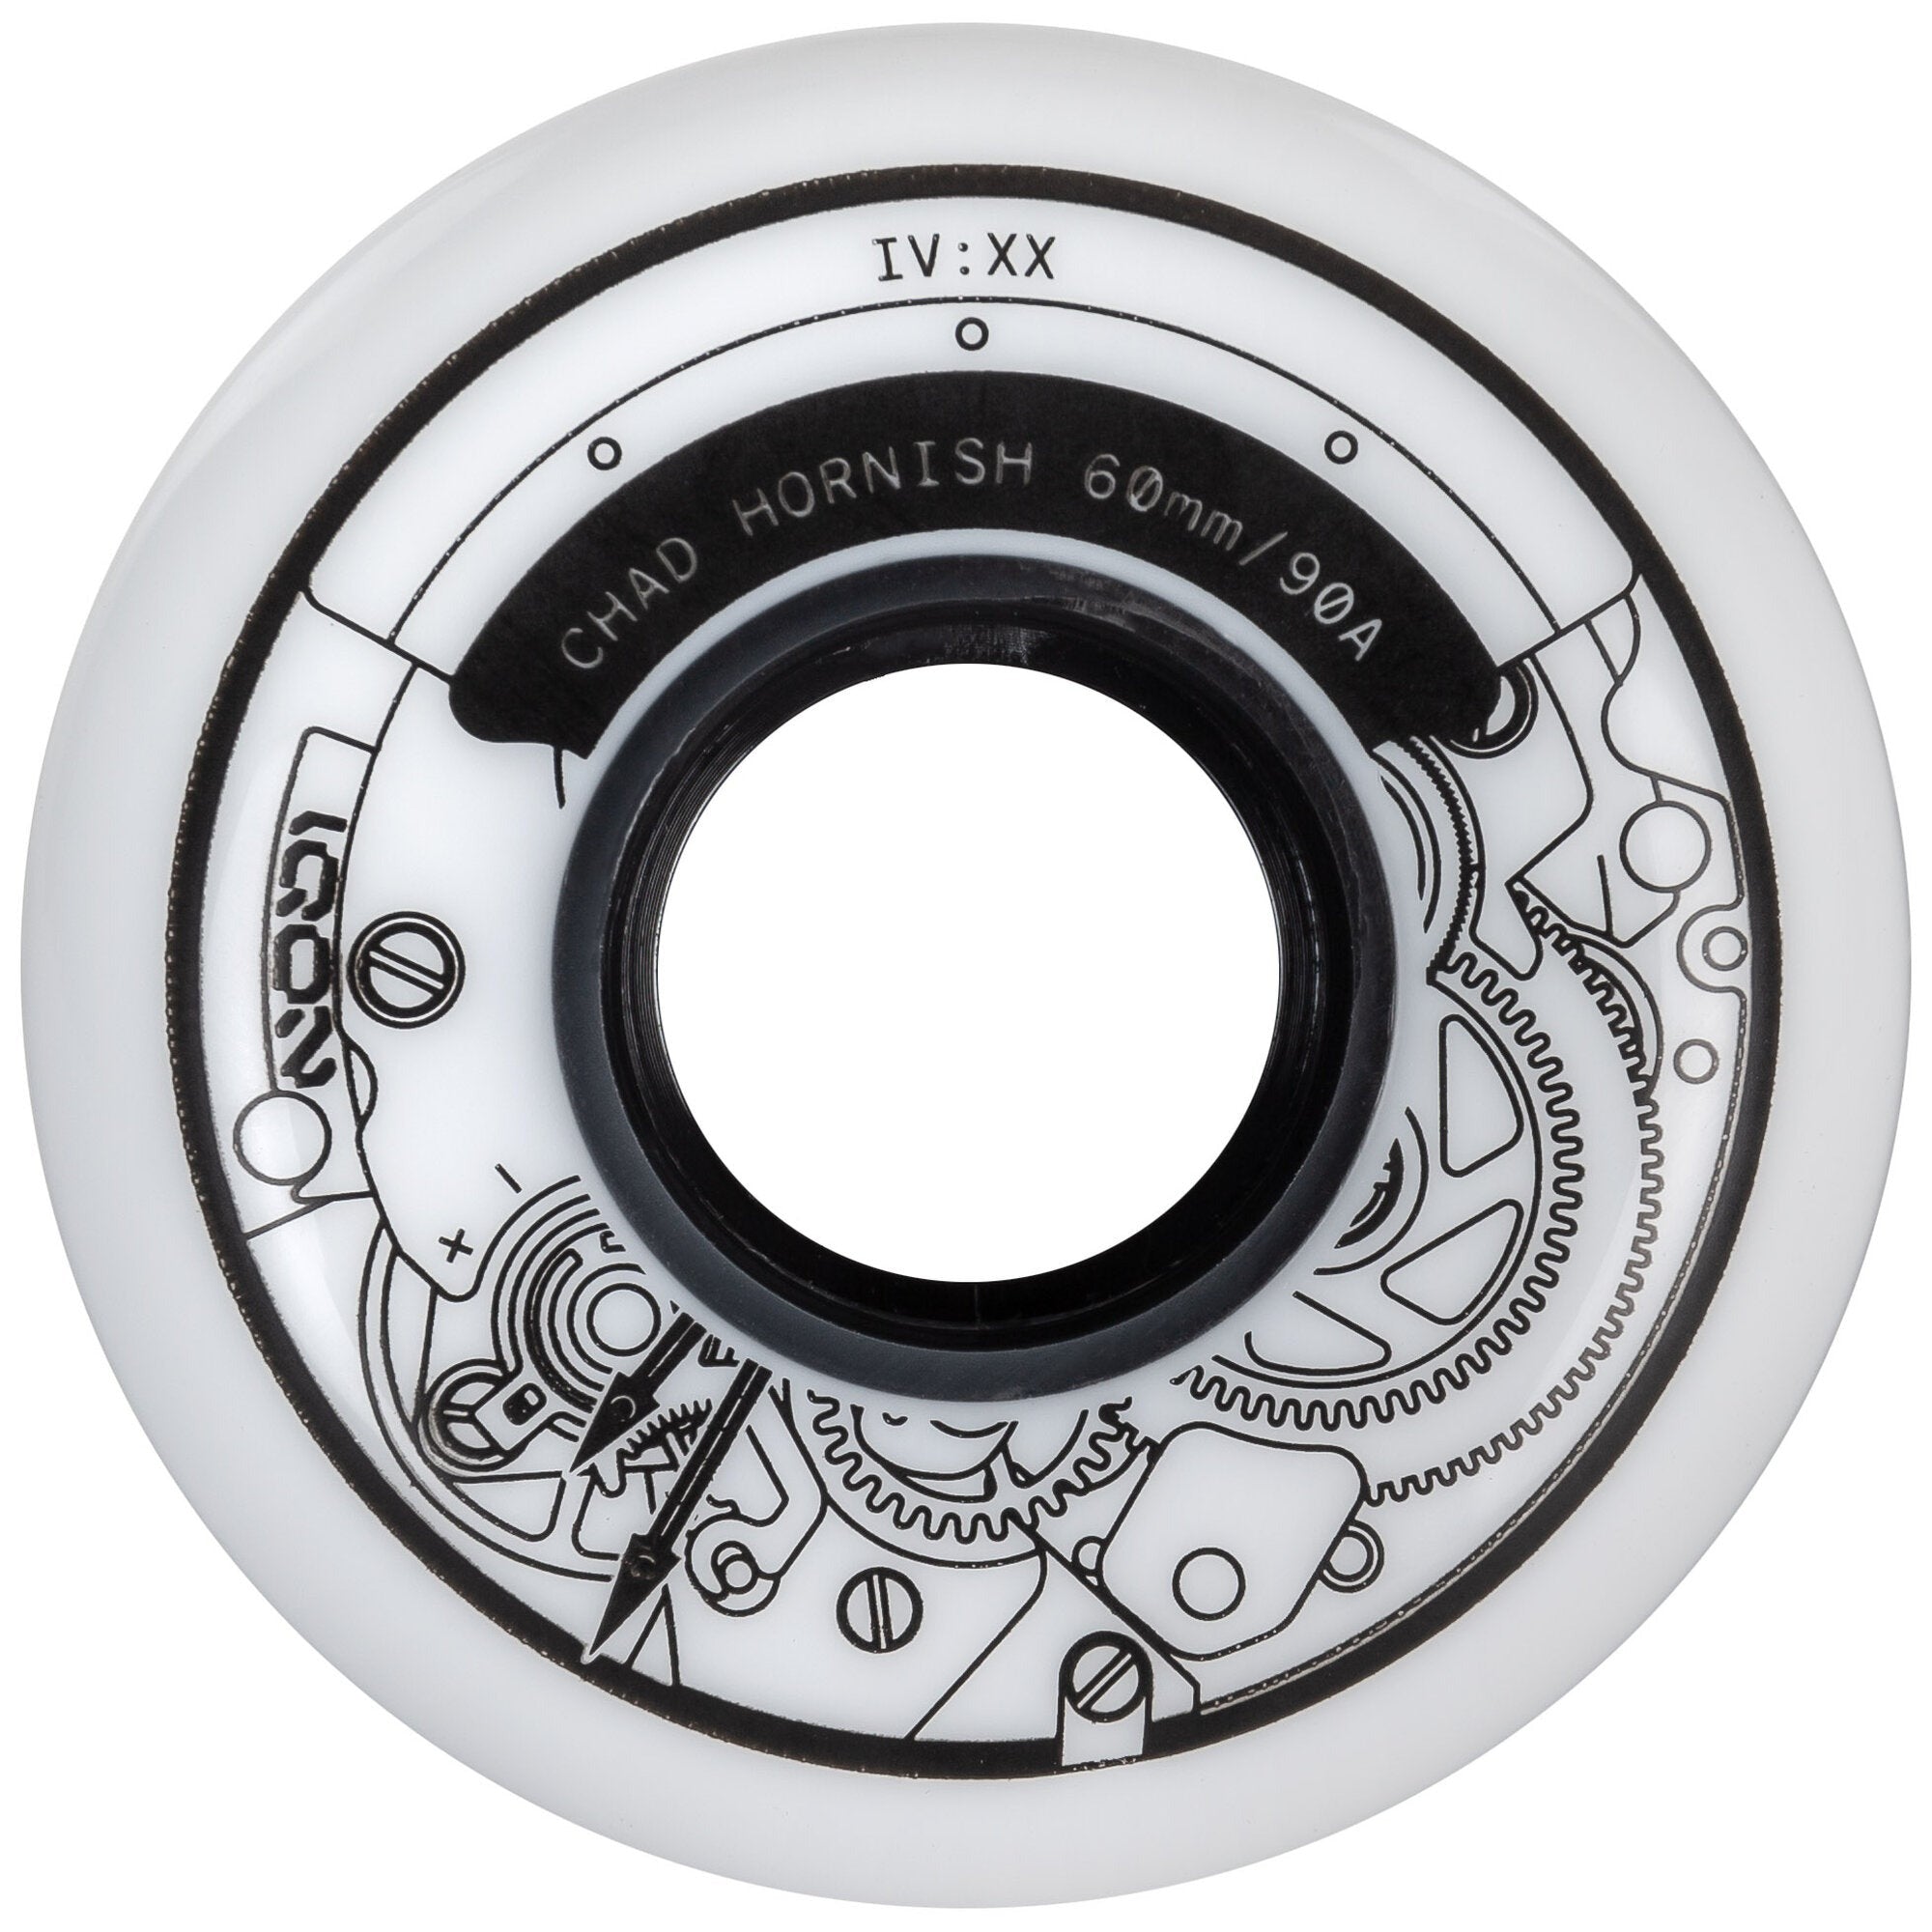 IQON - Chad 60mm/90a Aggressive Inline Skate Wheels